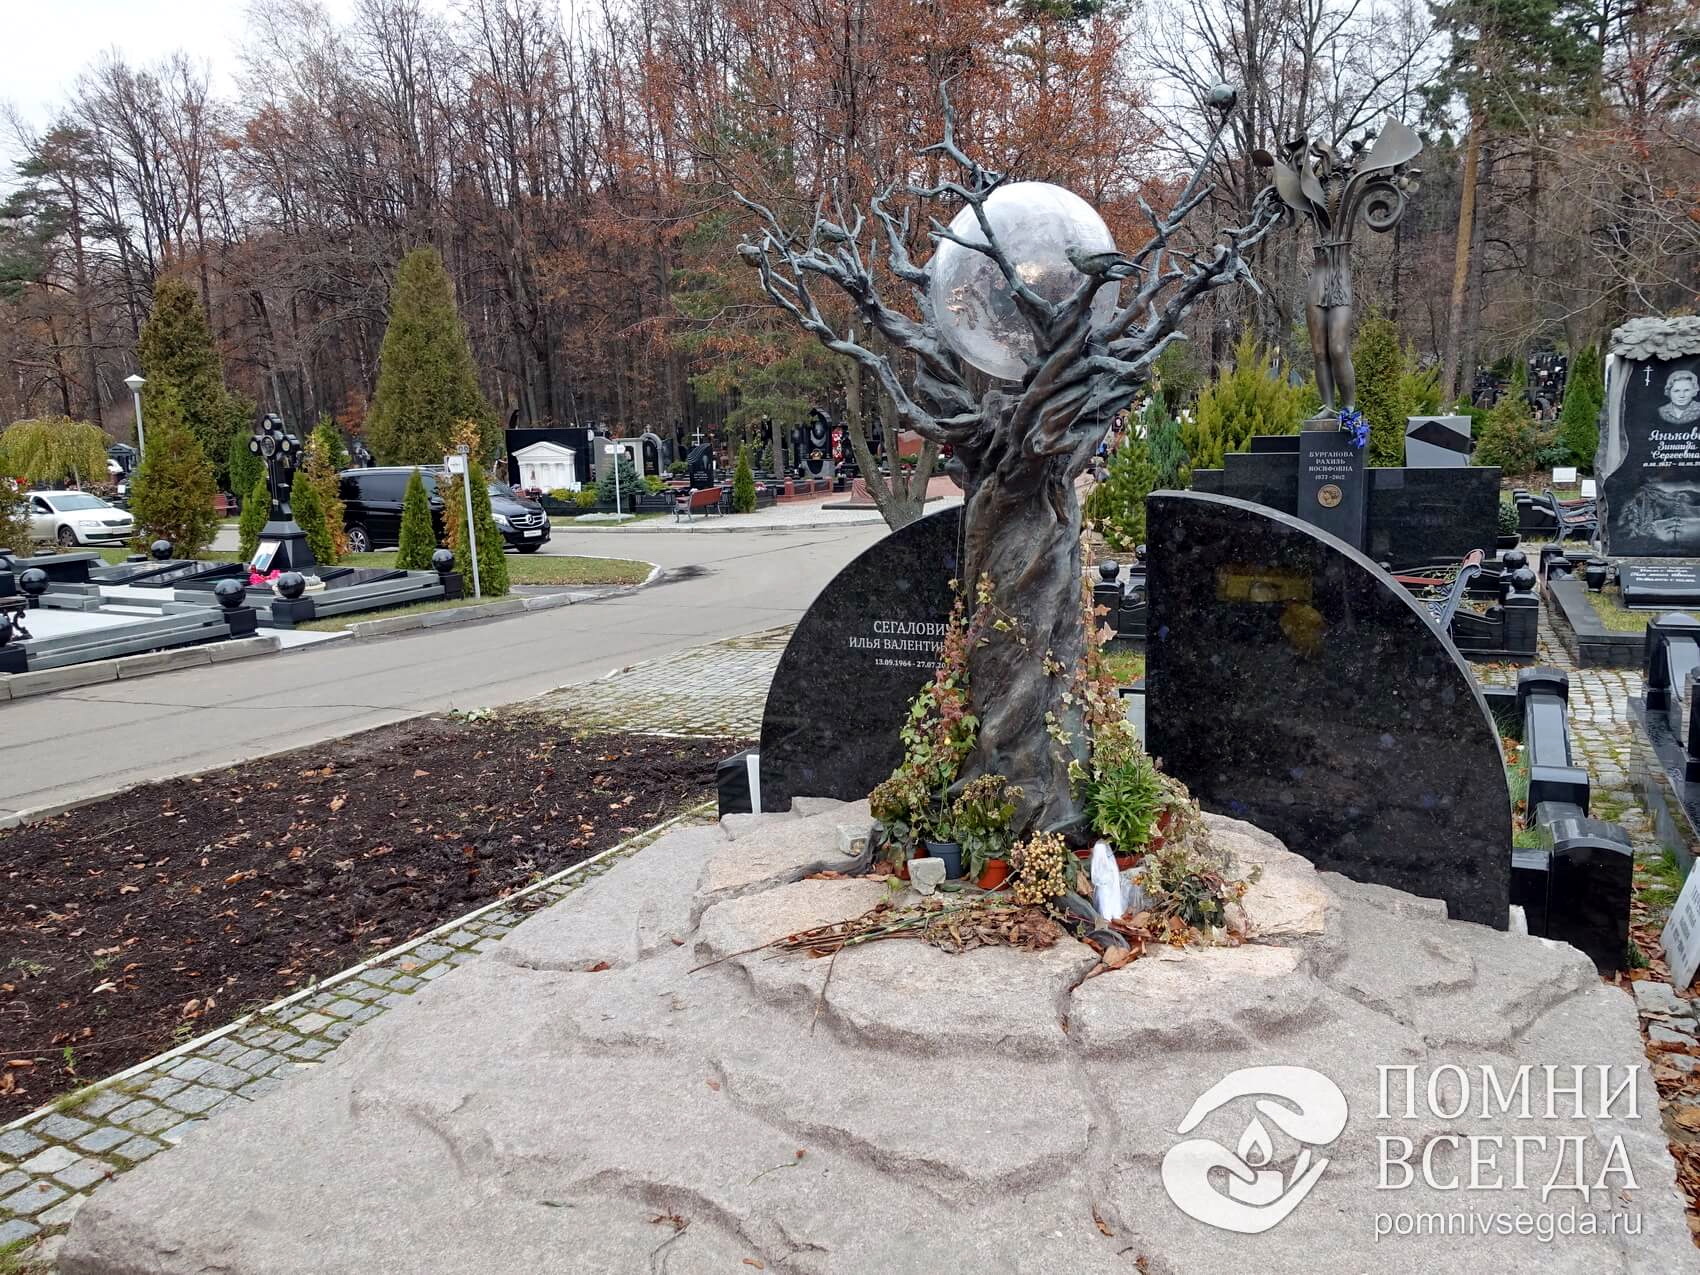 Памятник сложной формы в виде дерева с шаром